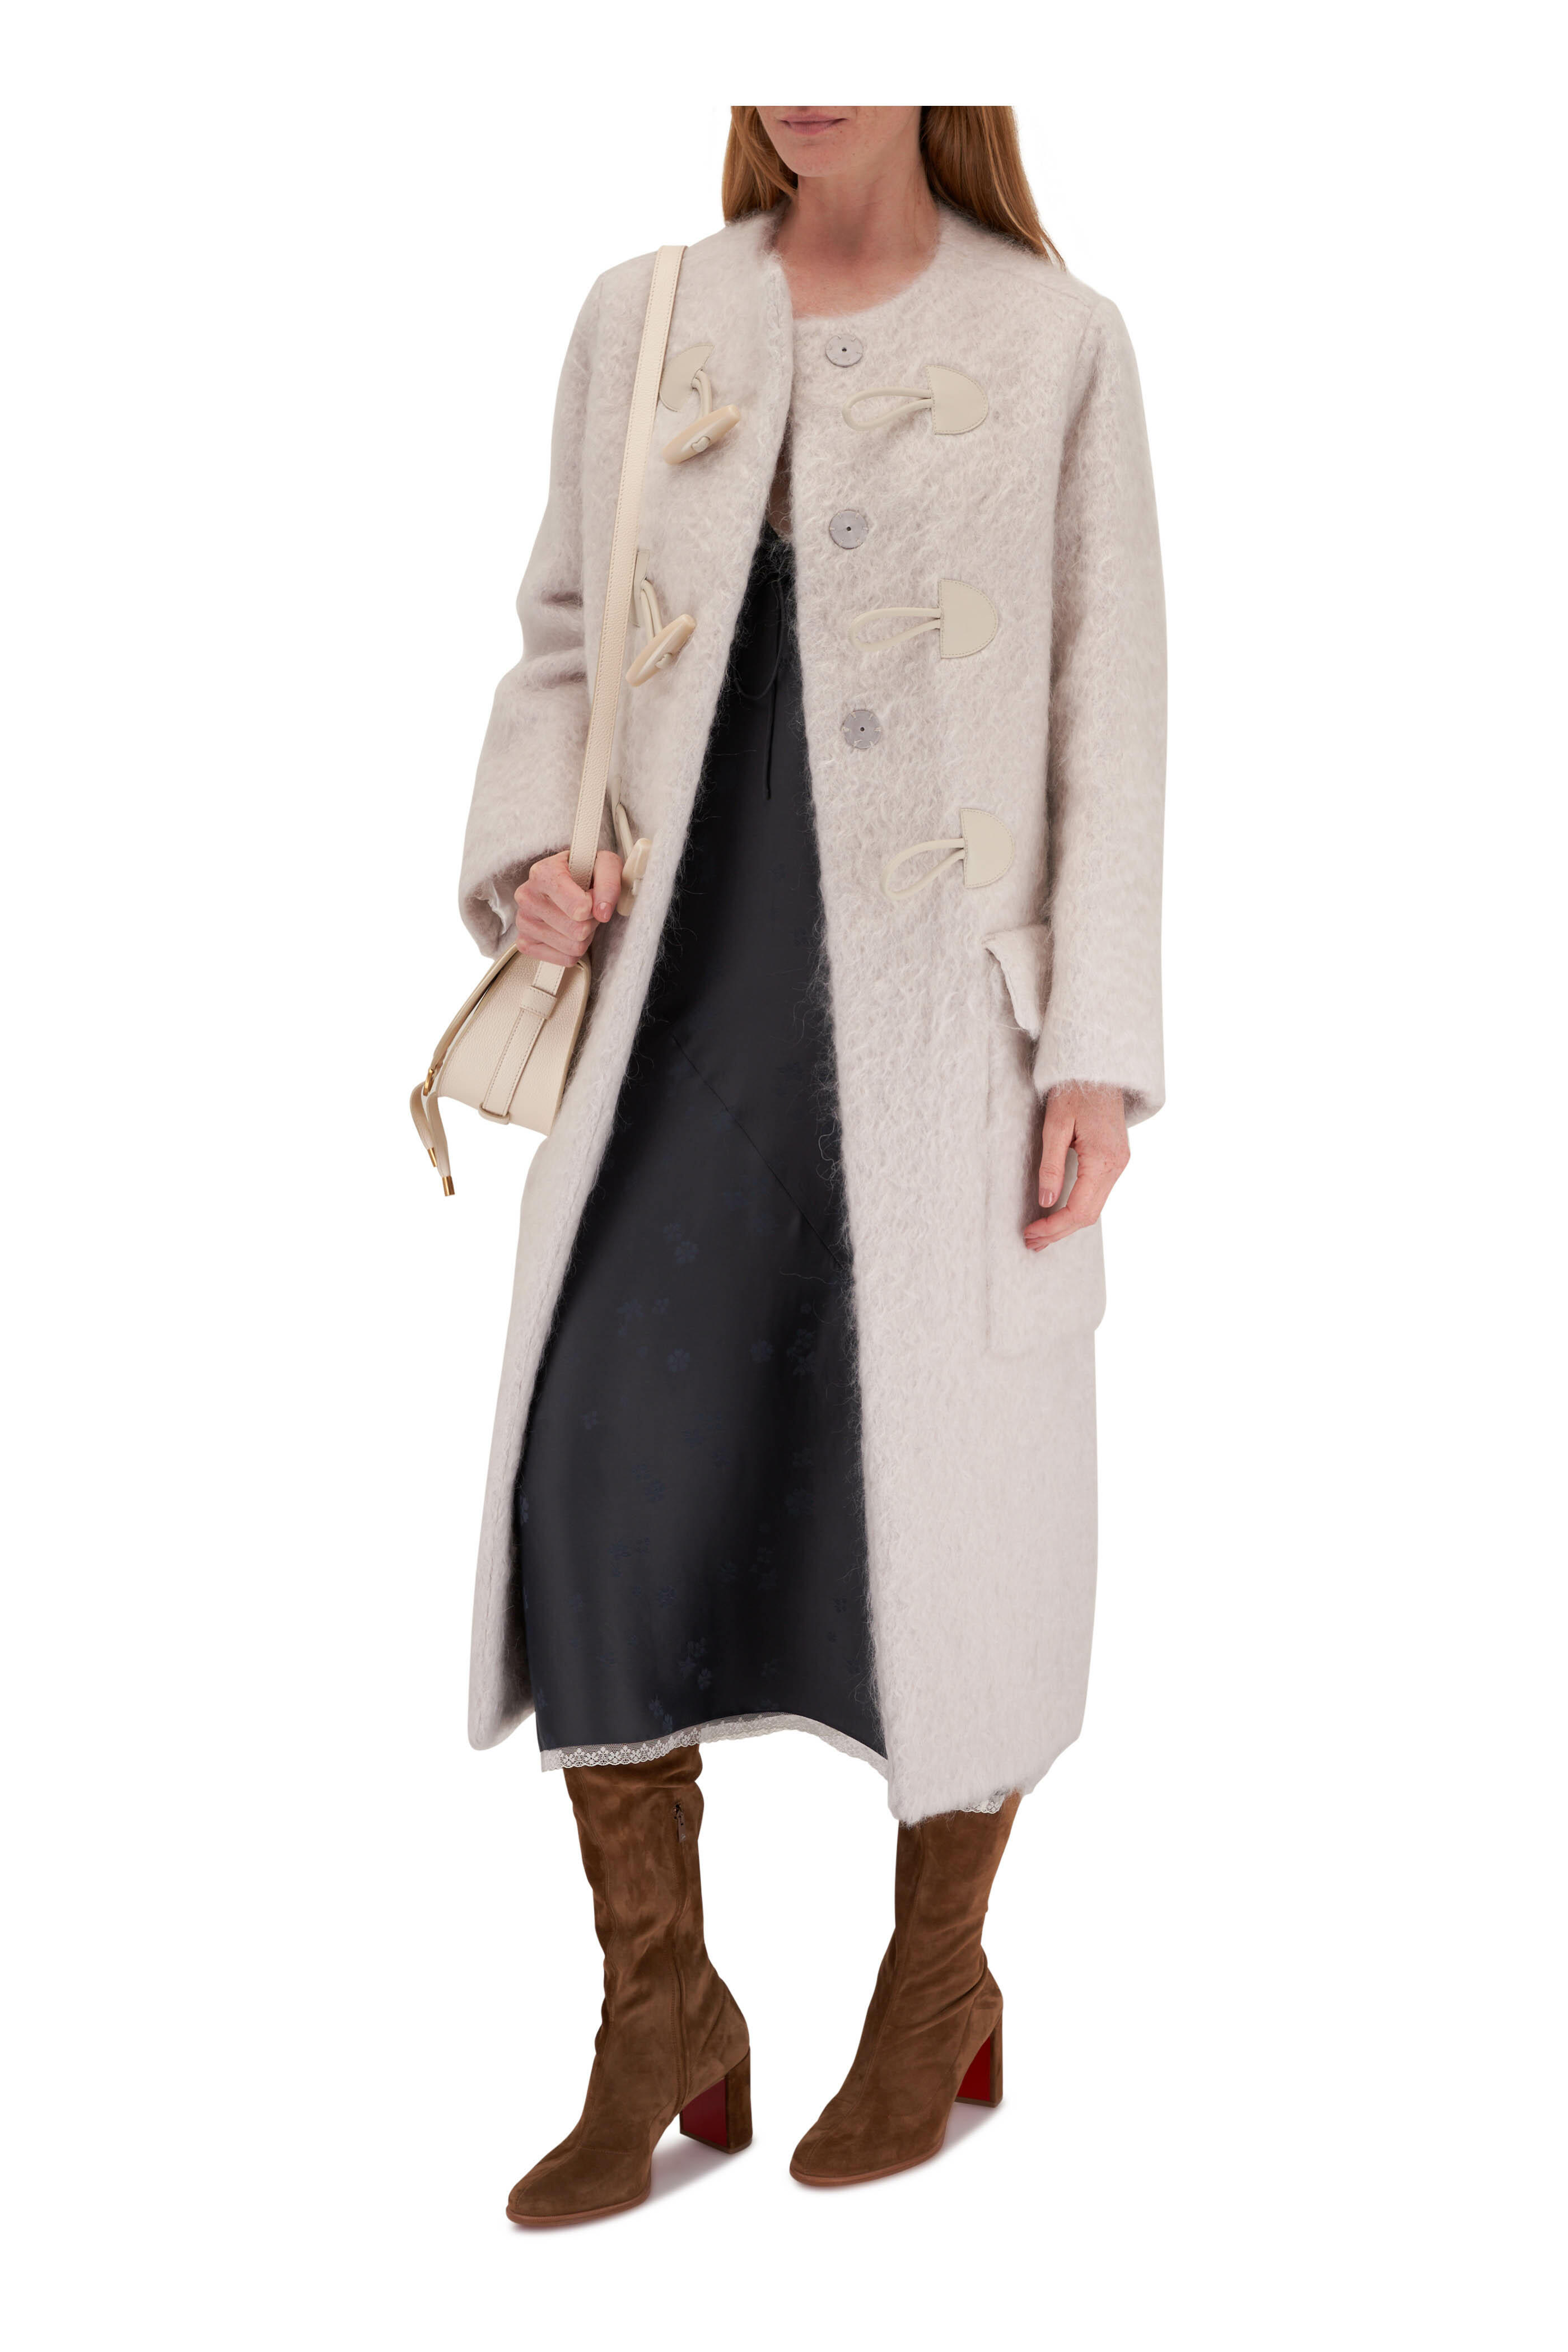 Dorothee Schumacher - Cozy Attraction Fluffy Light Beige Duffel Coat